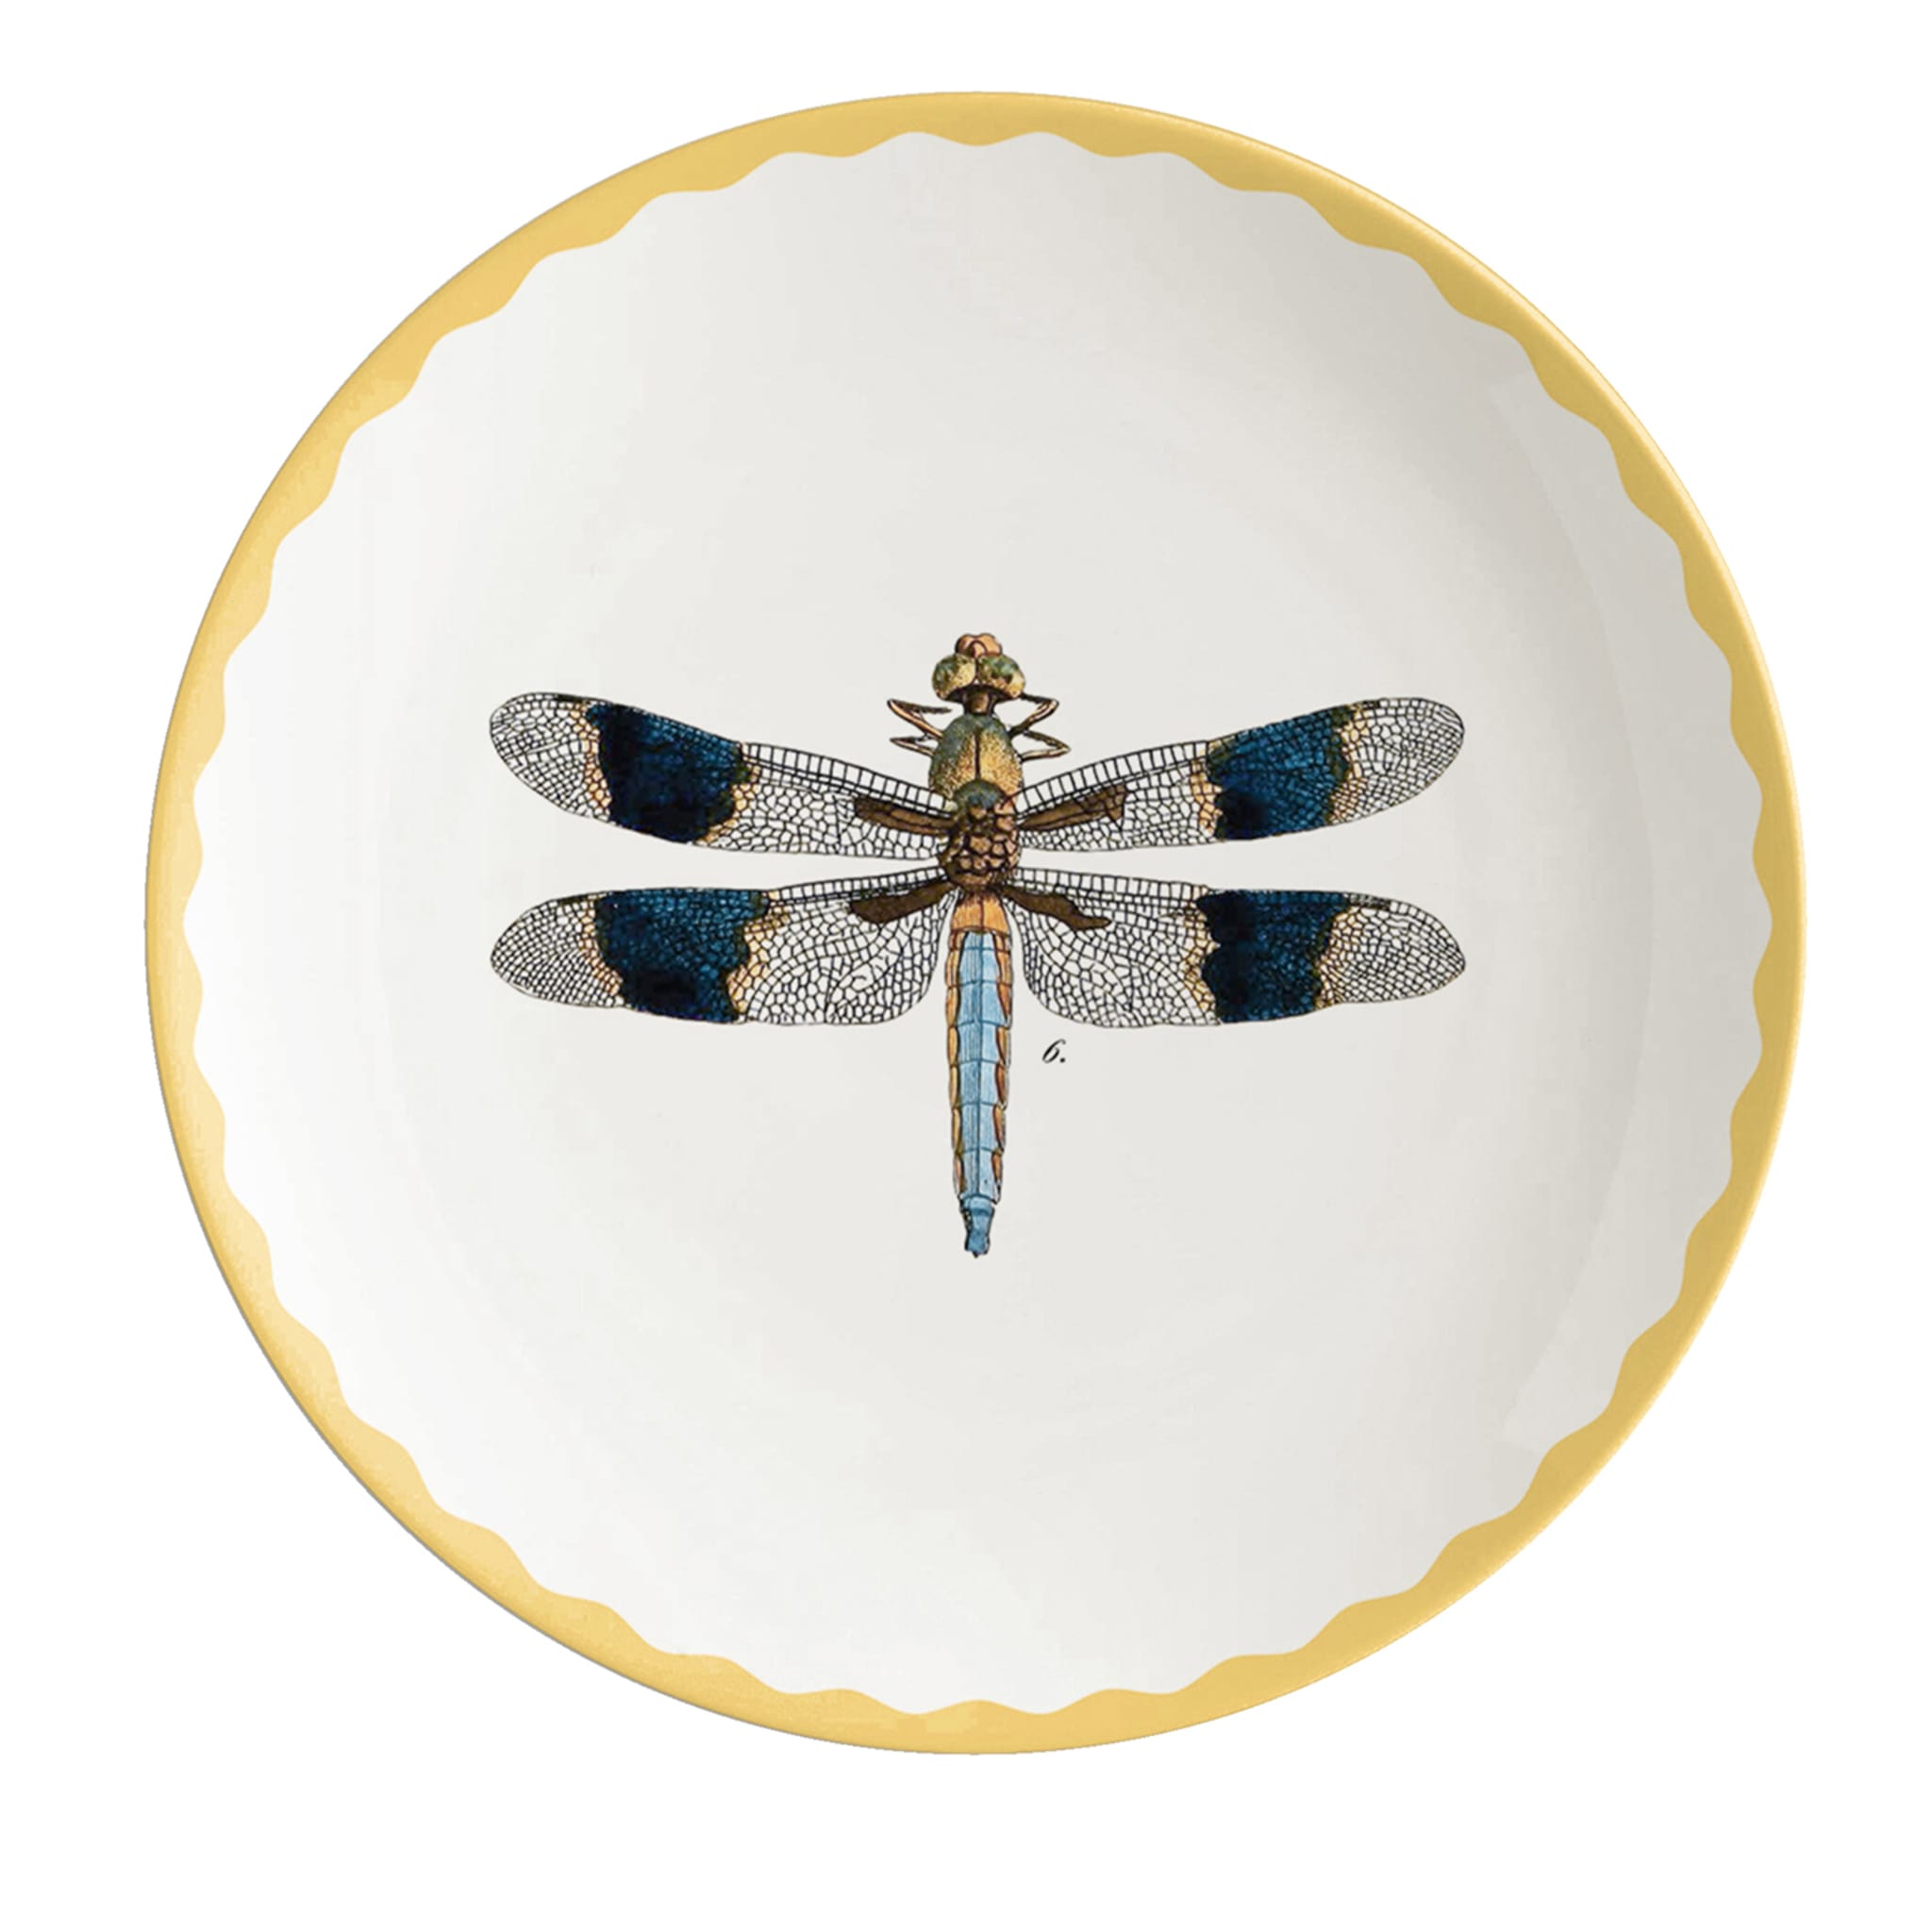 Cabinet De Curiosités Set Of 2 Porcelain Bread Plates With Dragonflies - Main view